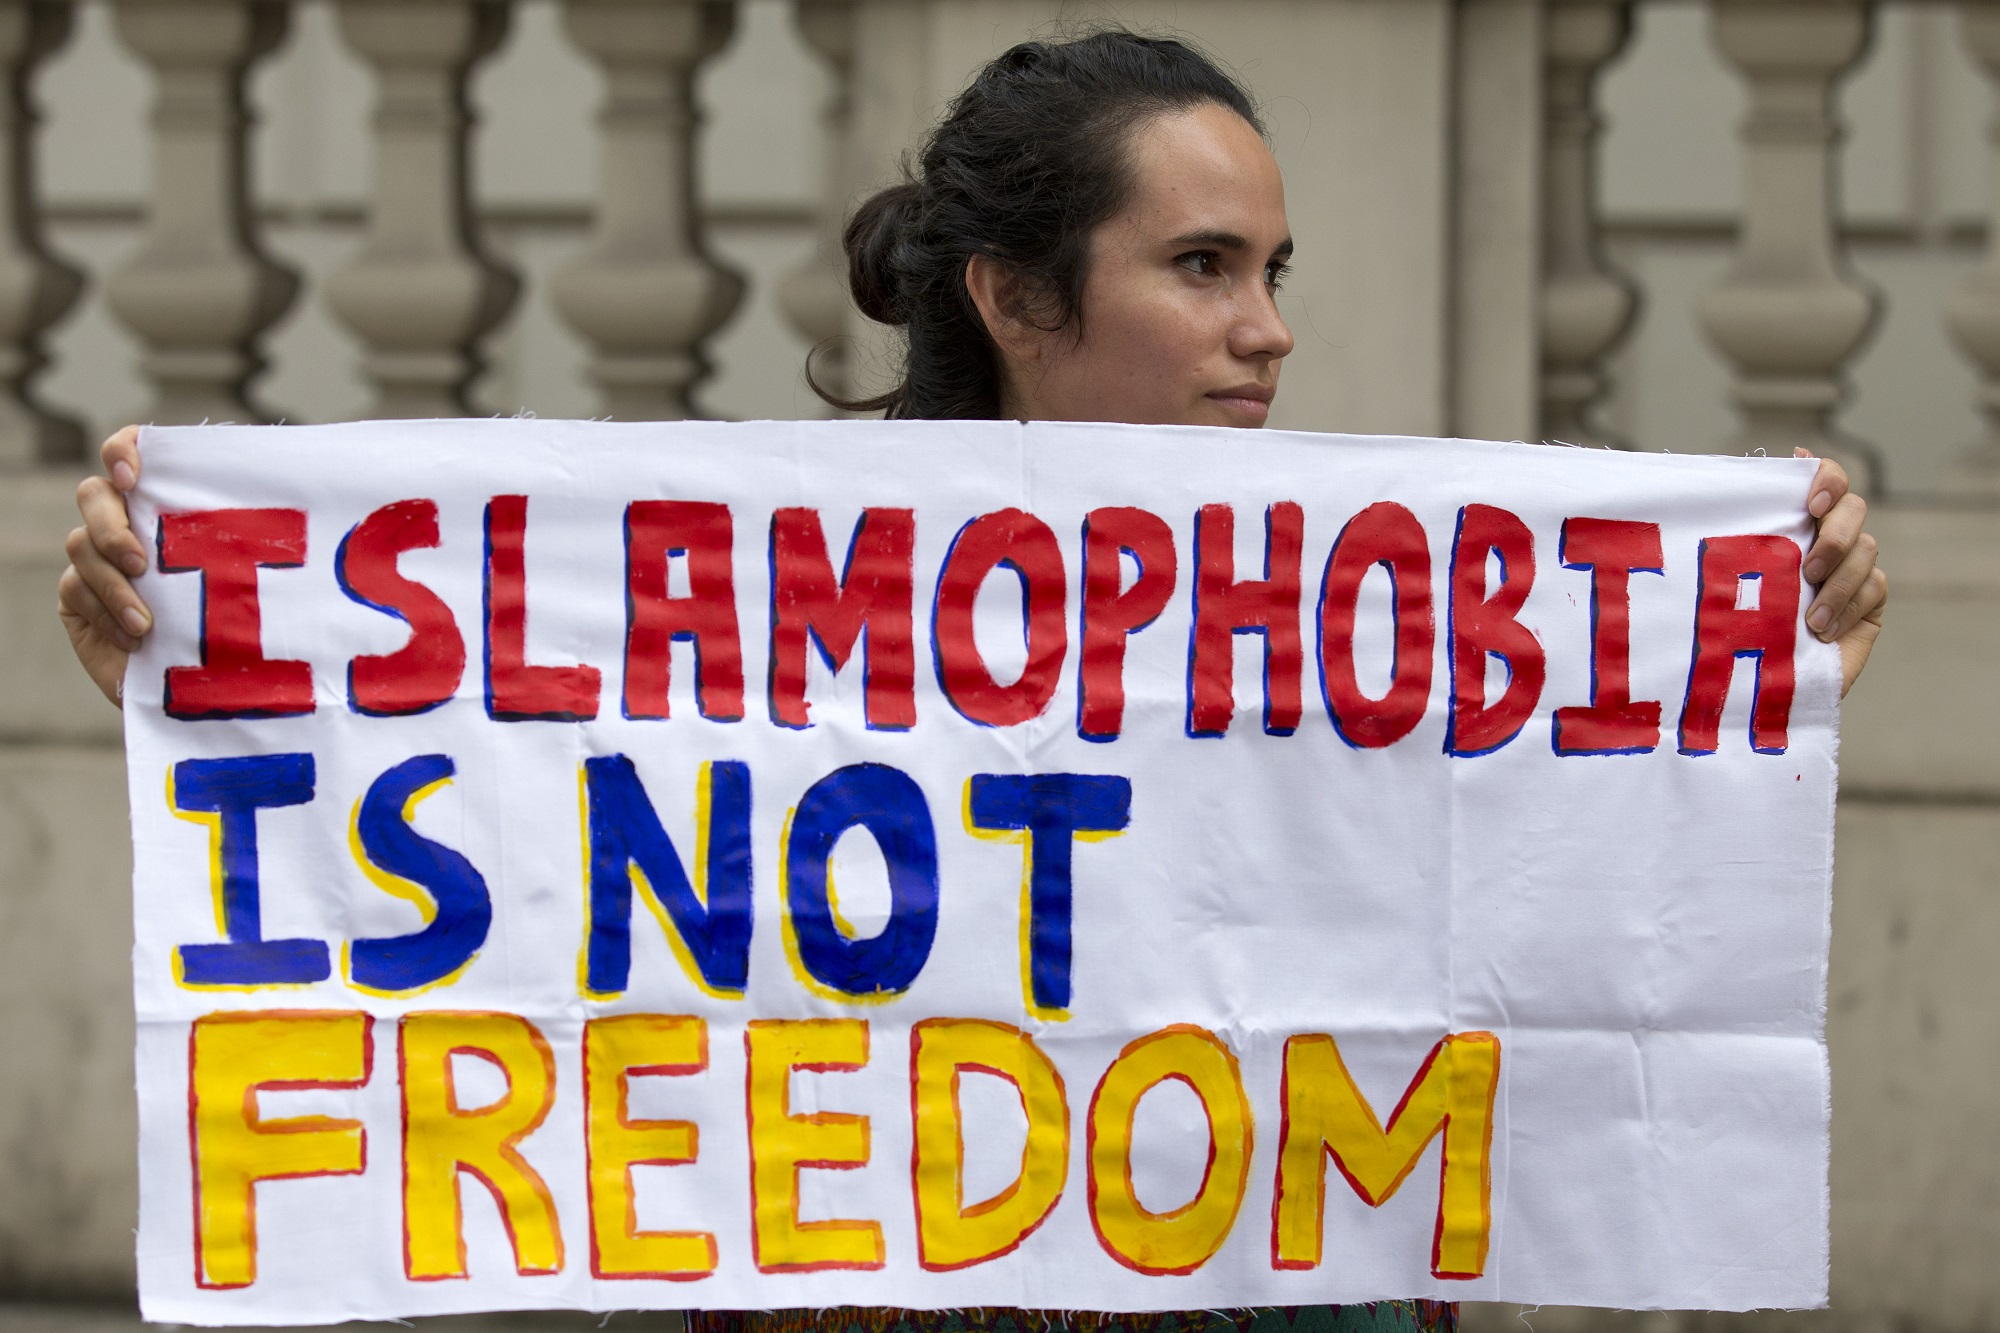 Dva od tri muslimana u SAD-u barem jednom u životu bili su izloženi islamofoiji